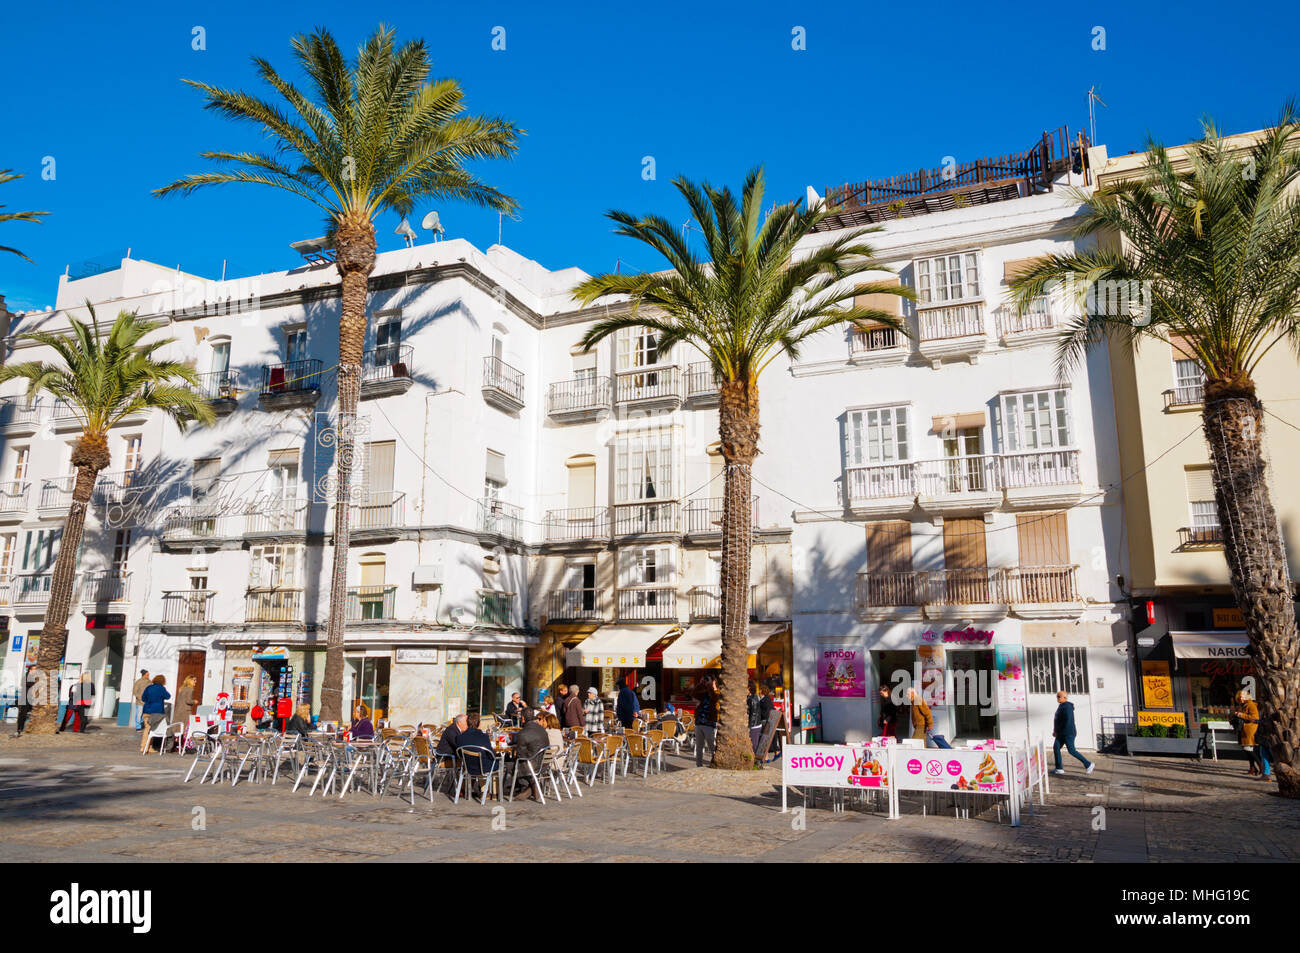 Plaza de la Catedral, Cadiz, Andalusia, Spain Stock Photo